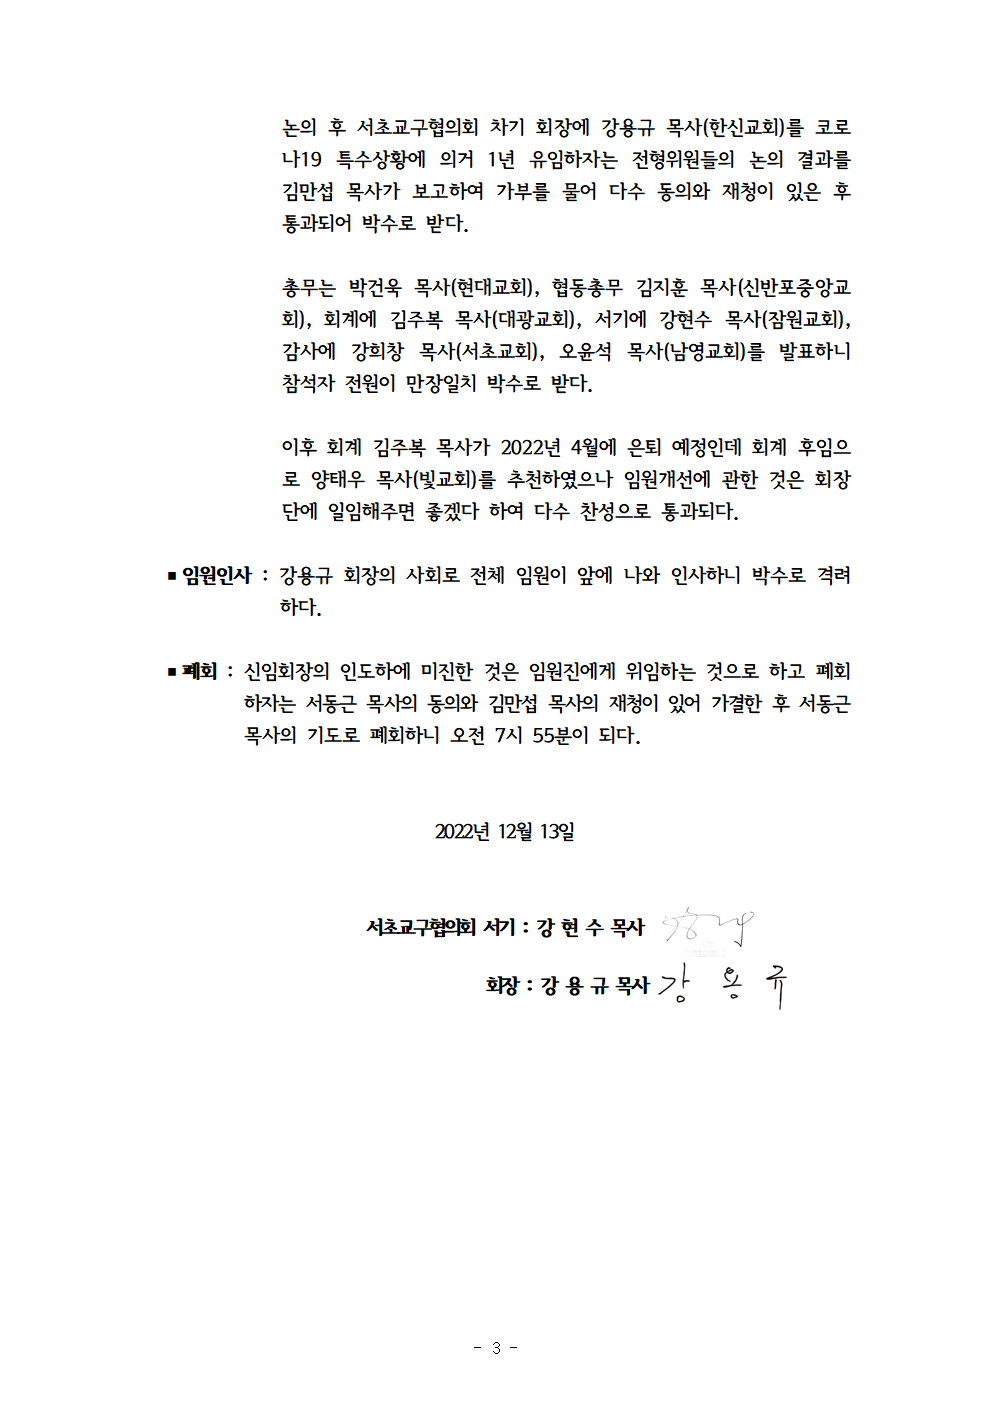 2022회기 서초교구협의회 정기총회자료(12.13.)_홈페이지004.png